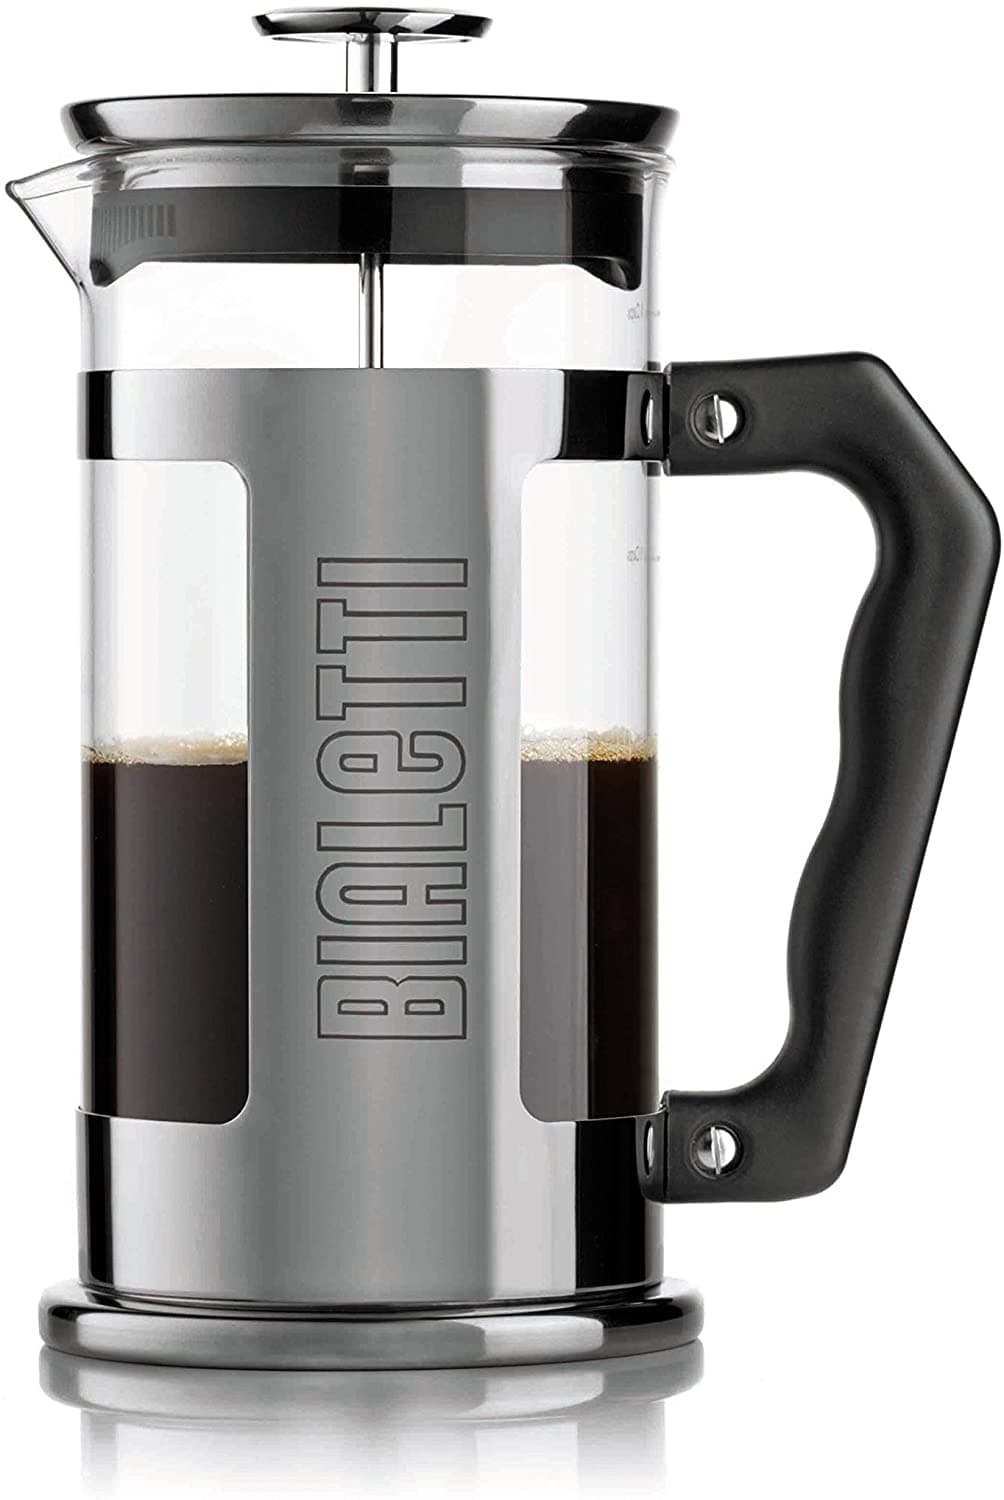 ماكينة تحضير القهوة بياليتي بعصارة قهوة - شفافة، اسود وفضي، 350 مل - 0003180/NW